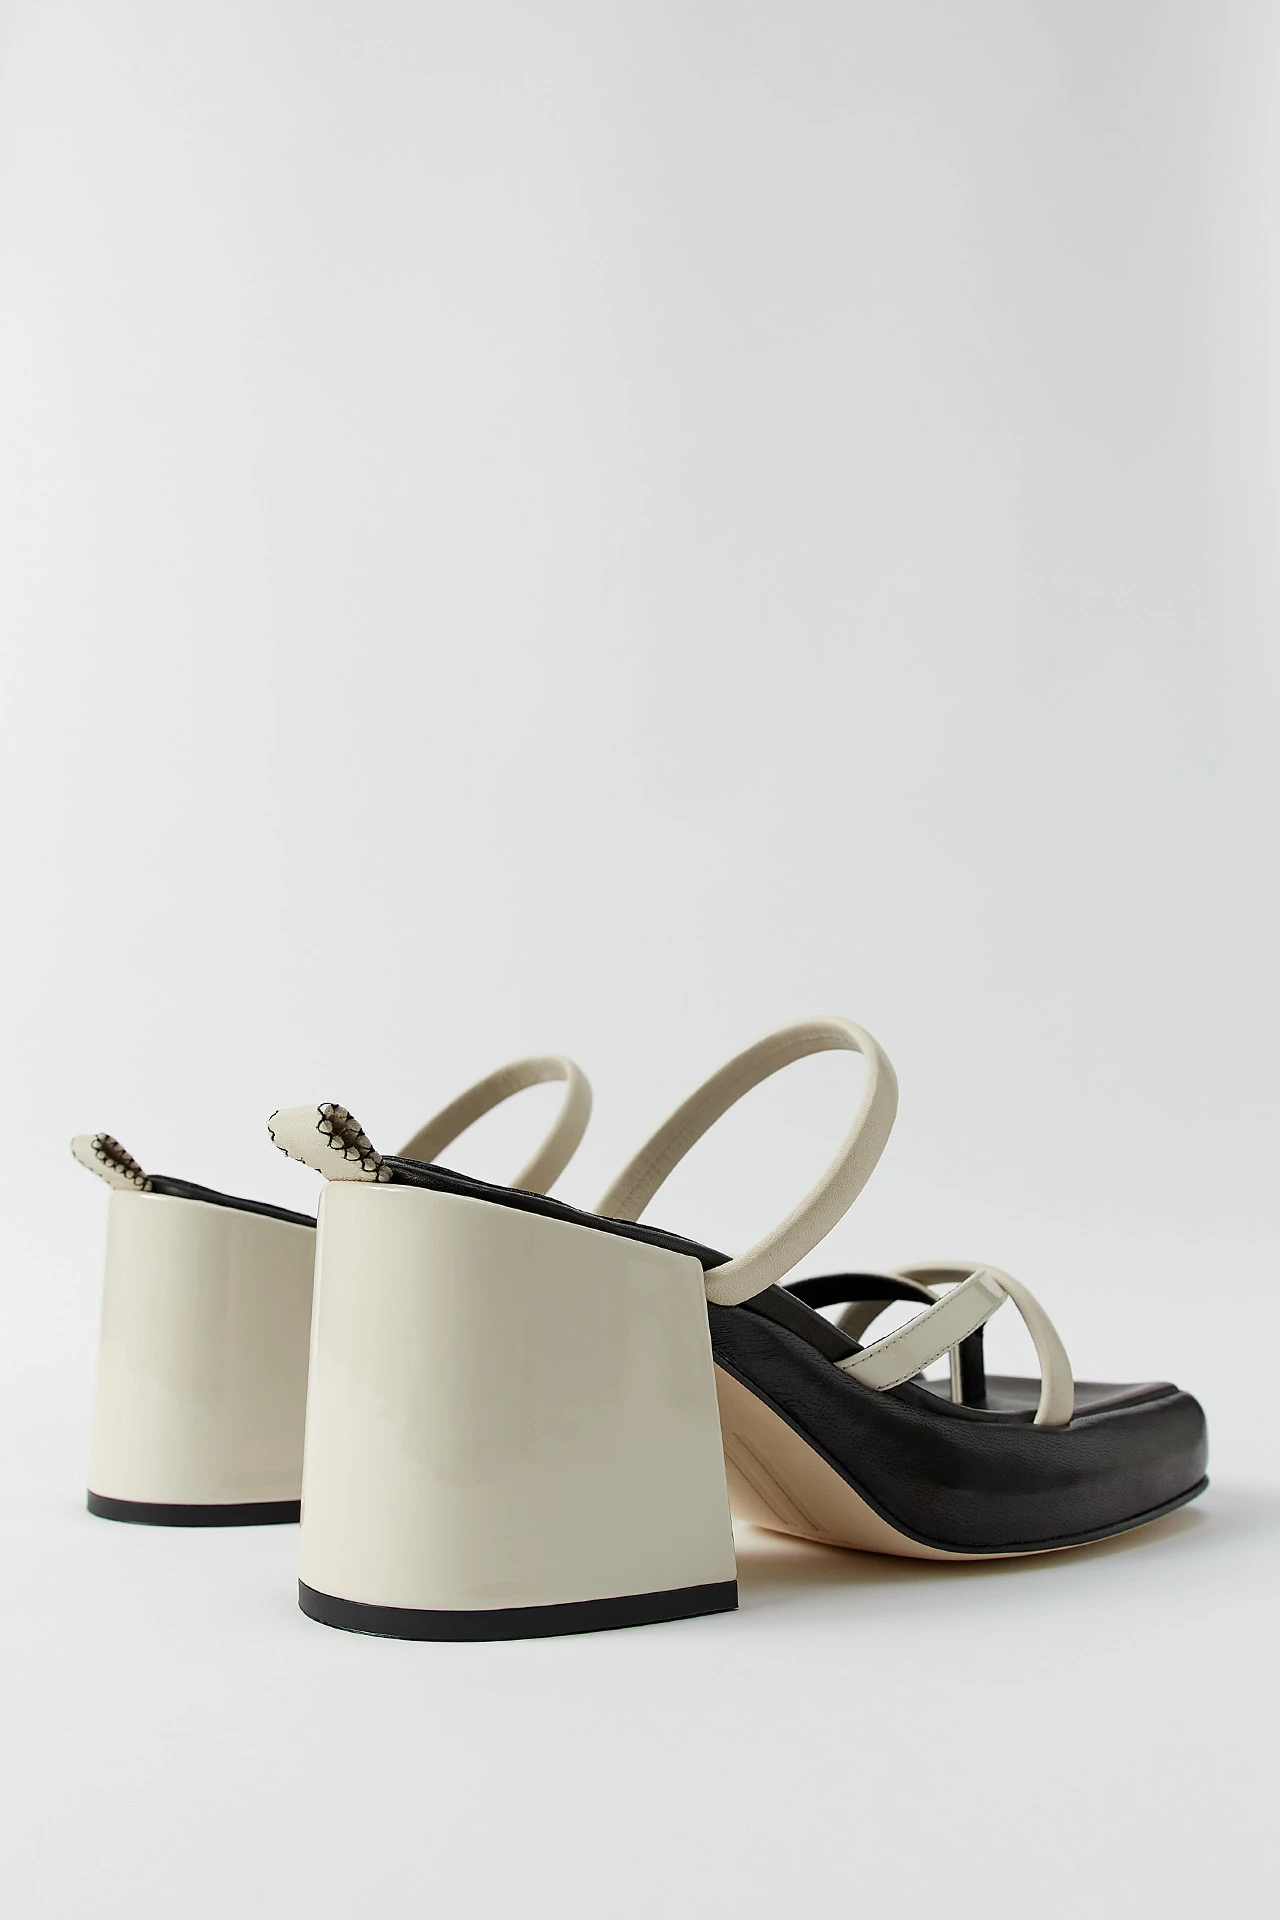 Miista-delfine-white-sandals-03